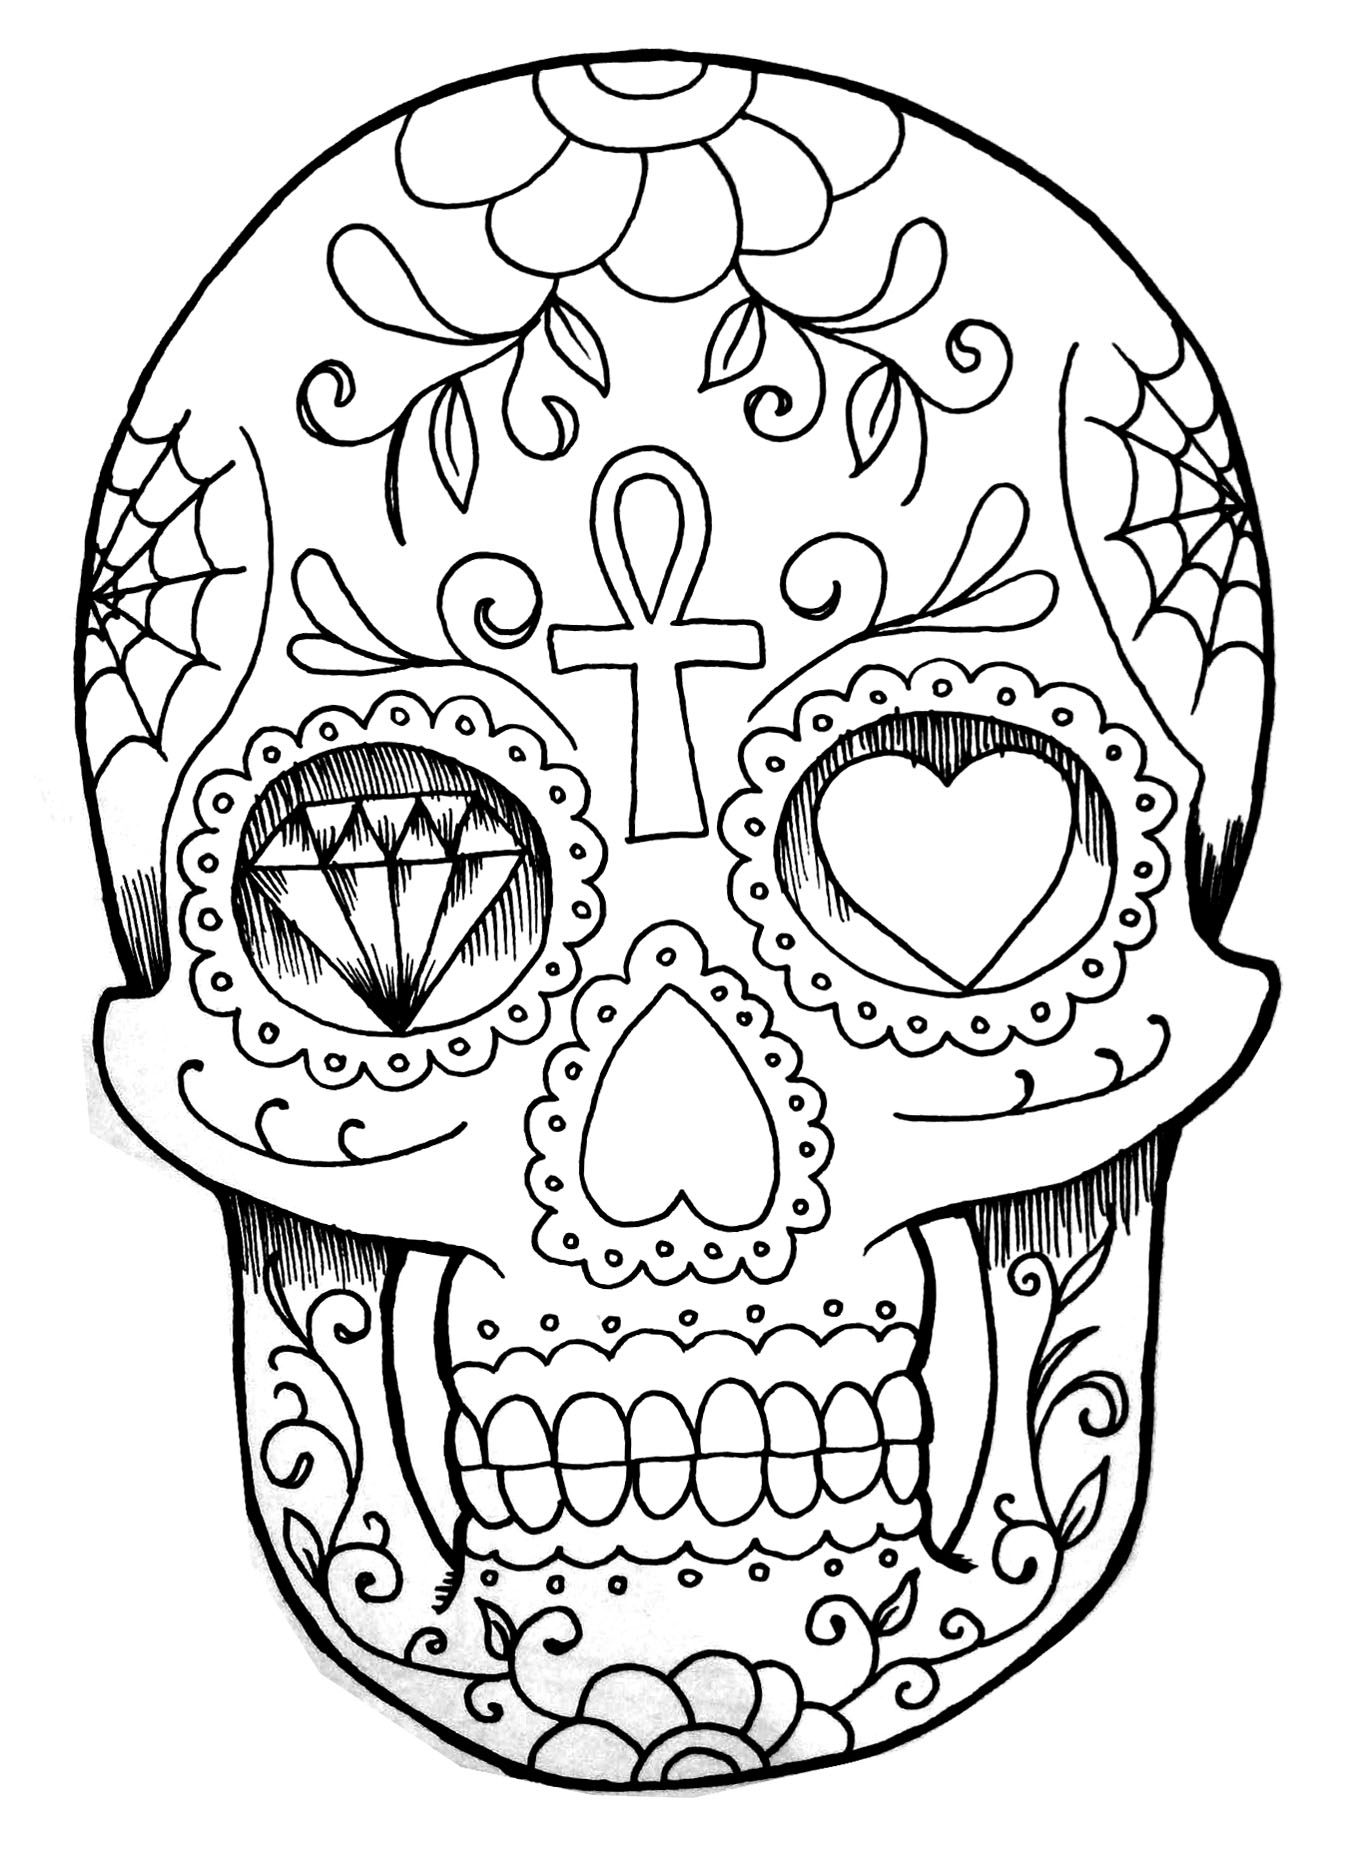 Desenho de um crânio humano, com diferentes padrões, como nas órbitas um coração e um diamante